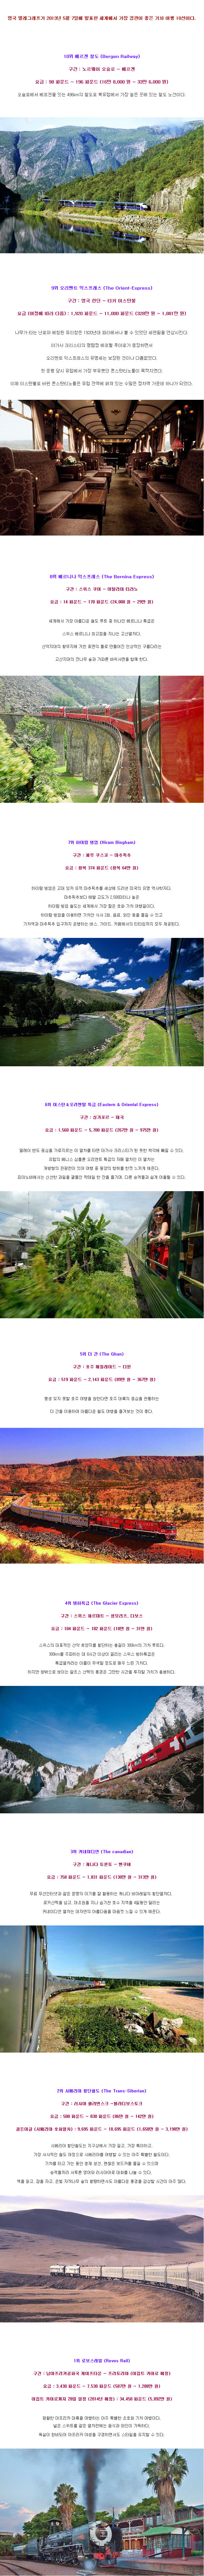 2013-07-11_193937 아름다운 기차여행.jpg